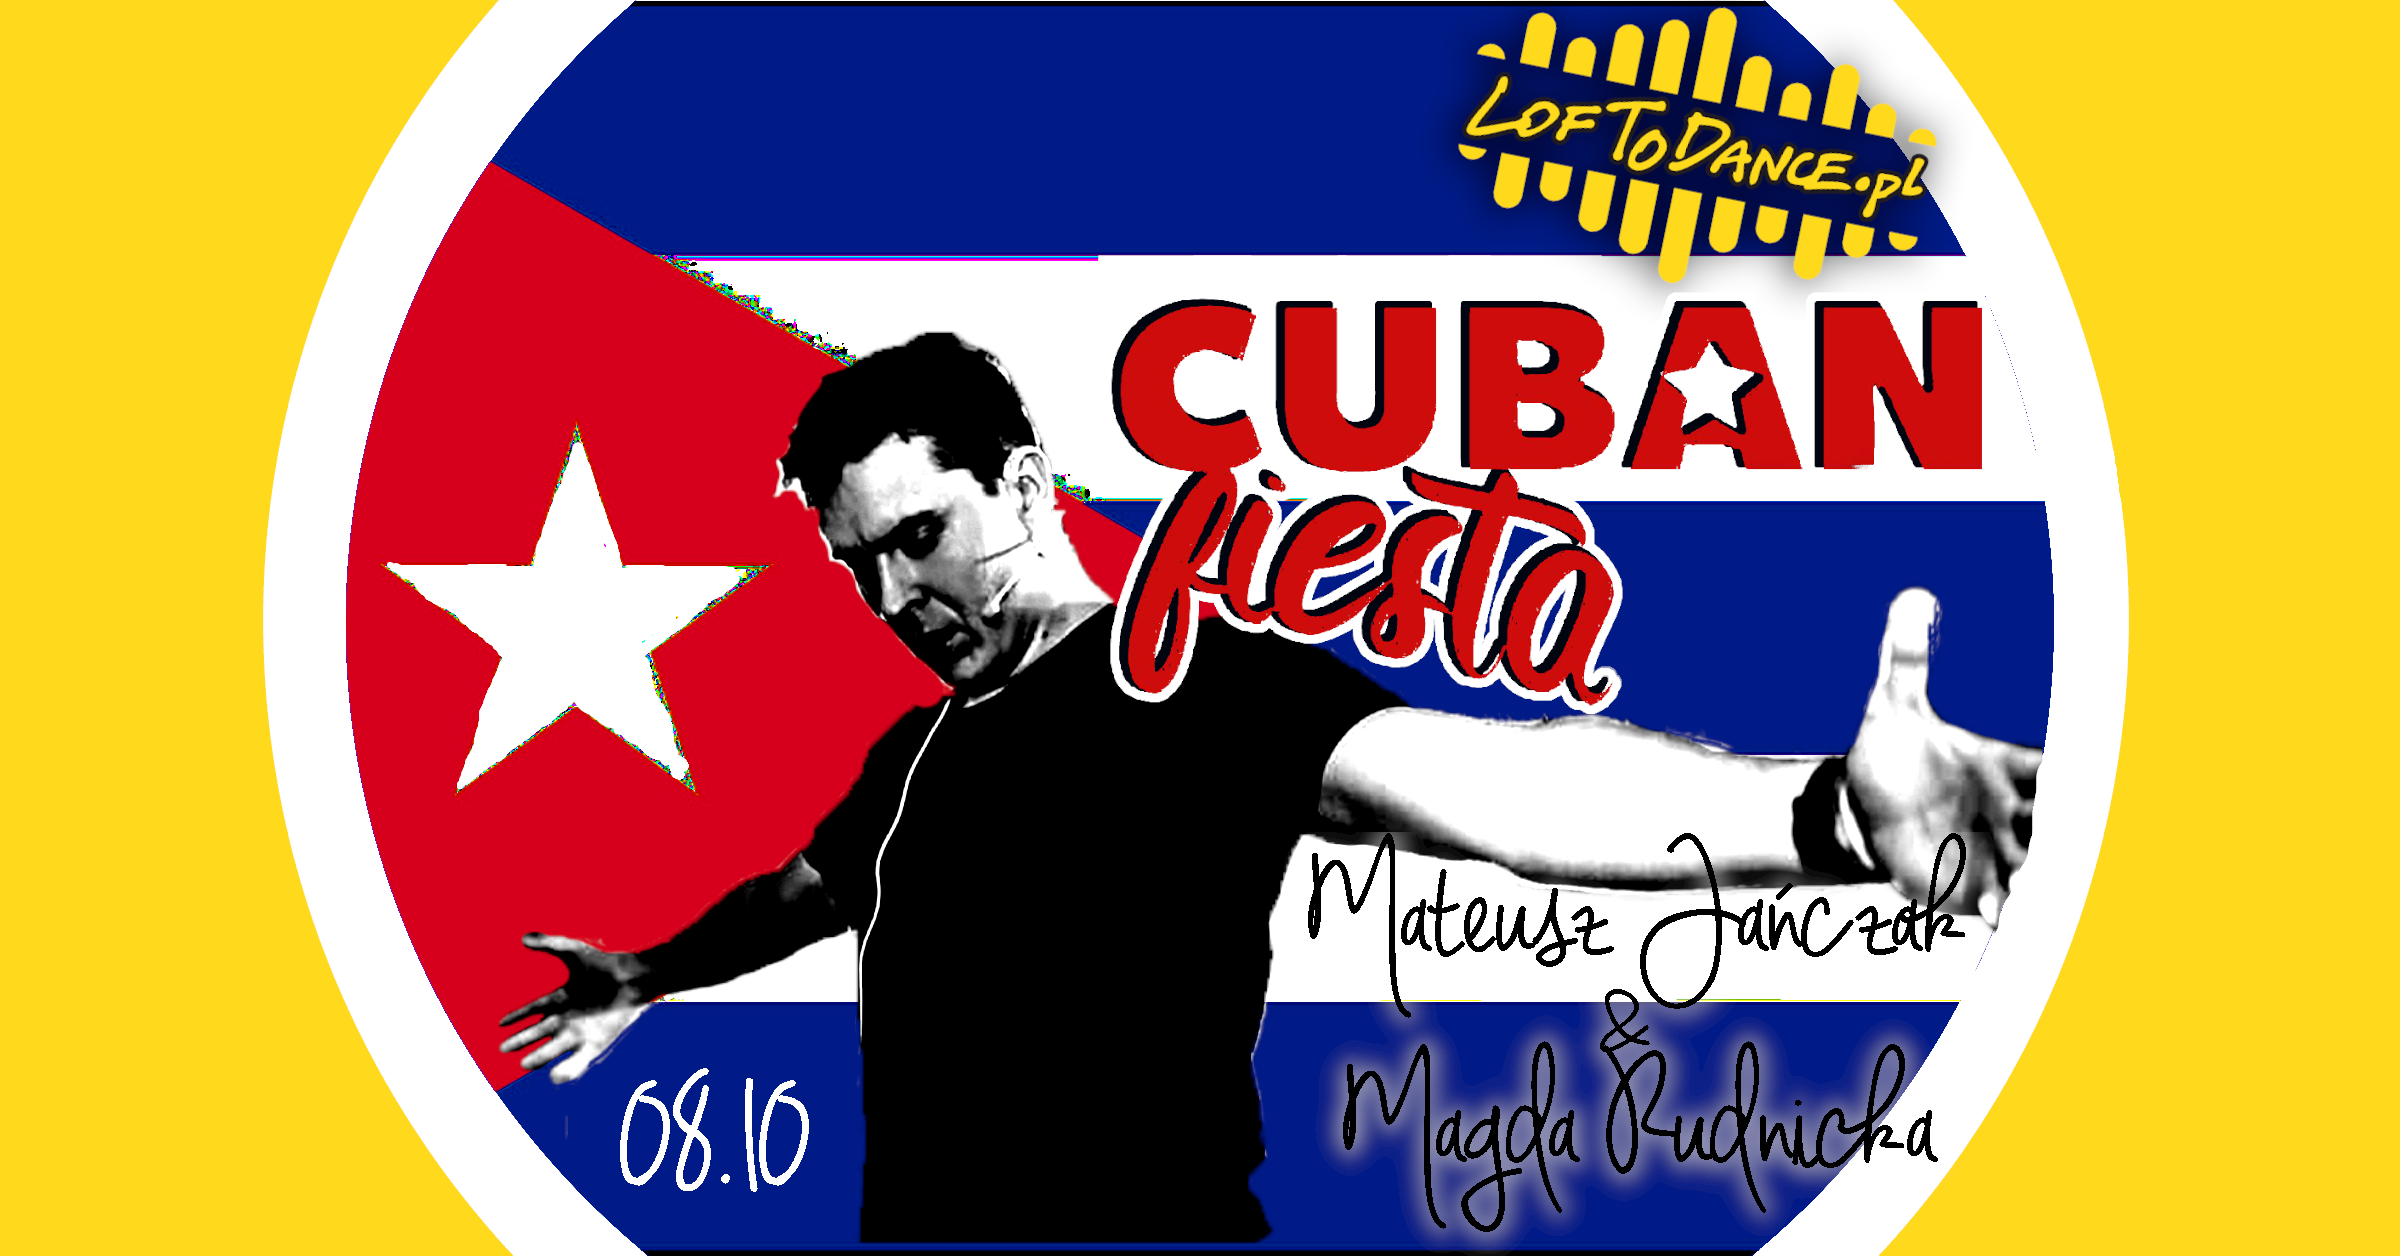 Cuban Fiesta z Matim i Magdą - sklep Loftodance